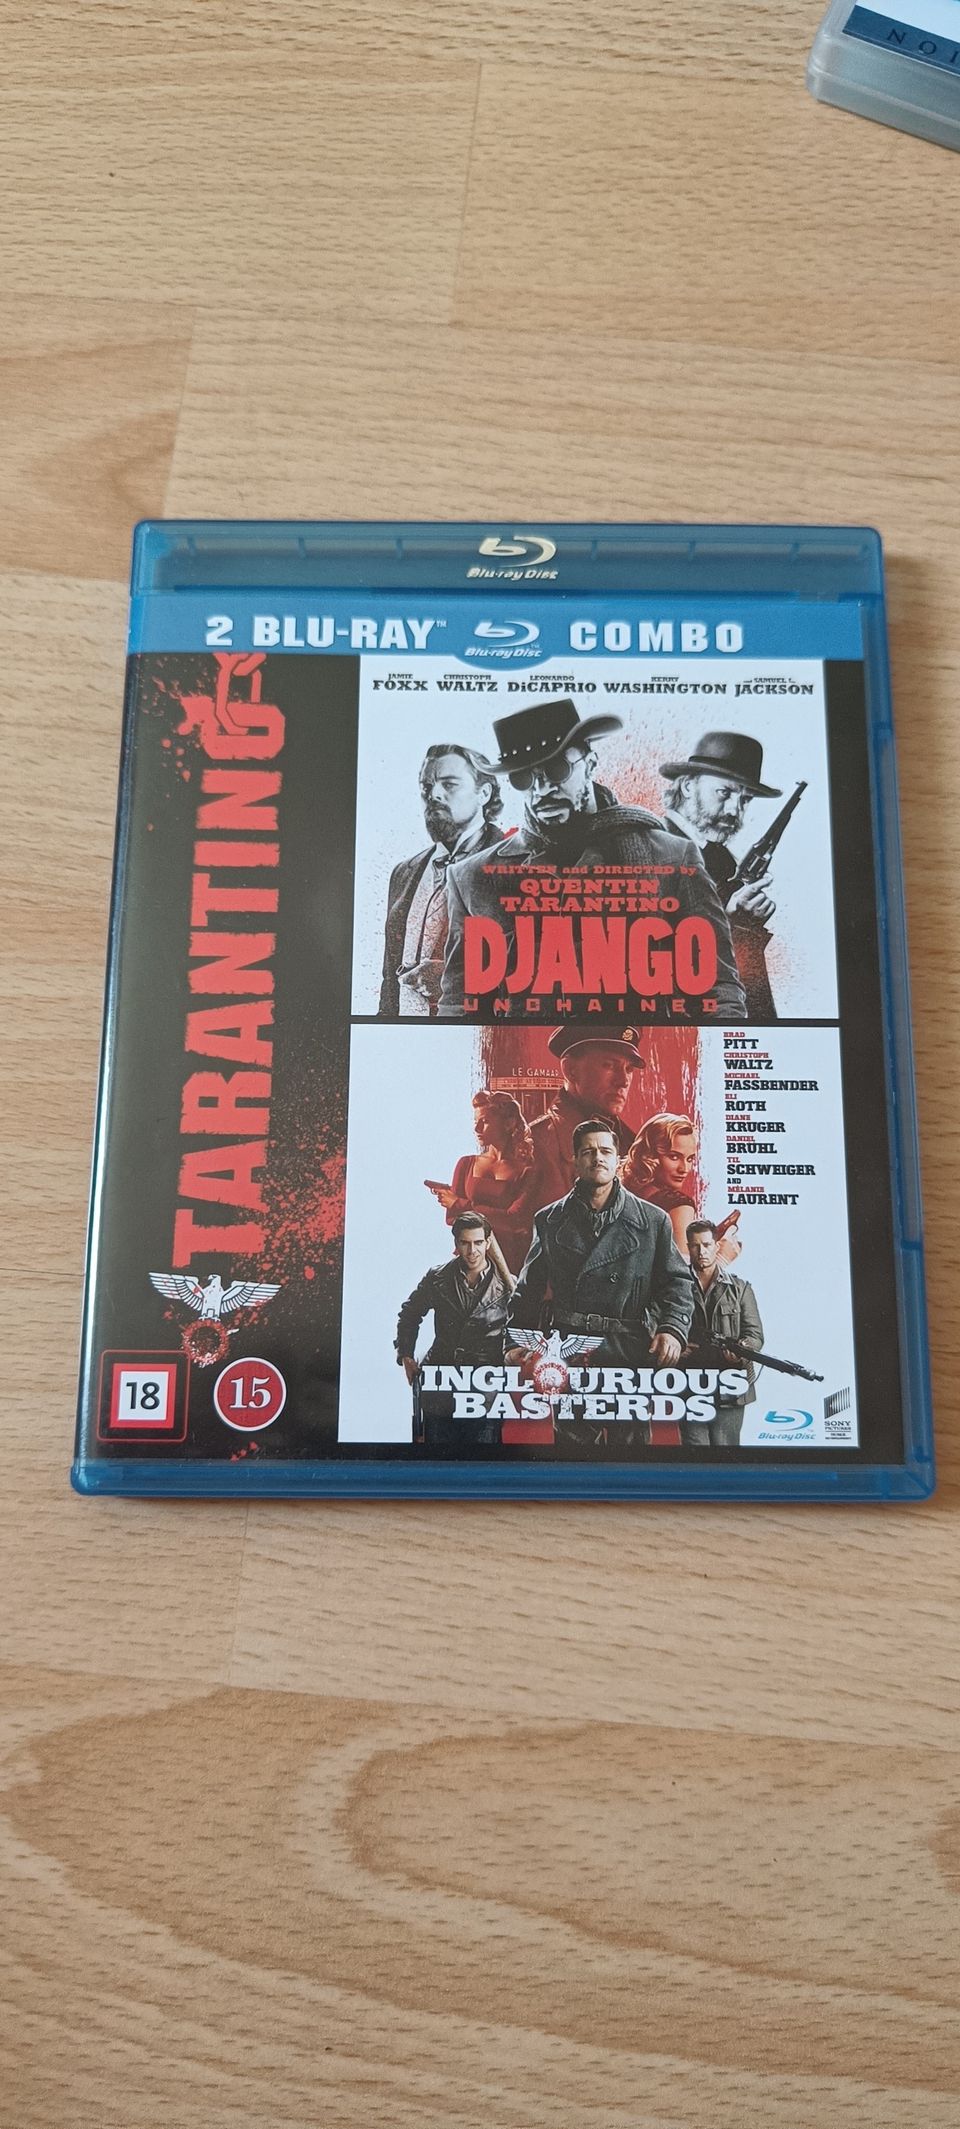 Django Unchained ja Inglorious Basterds boksi (Blu-ray)